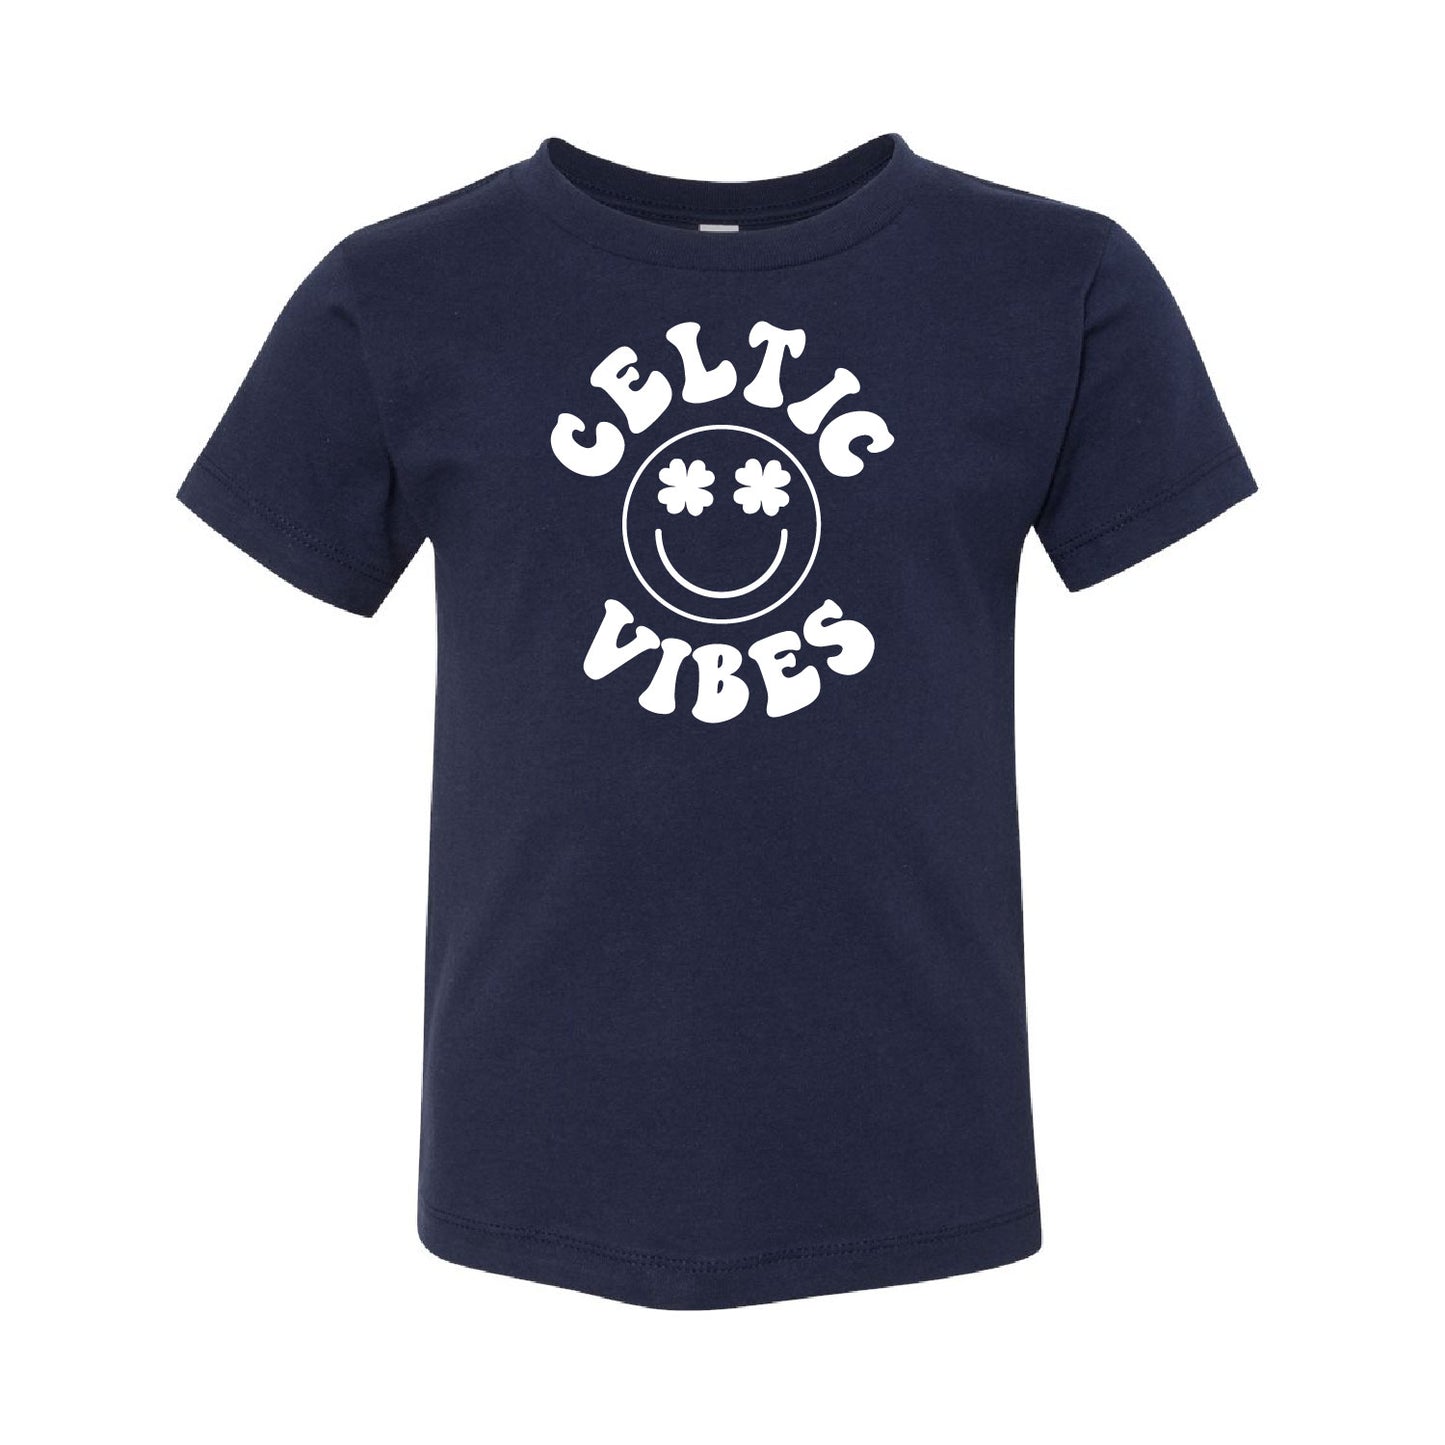 Preschool Premium Cotton T-Shirt | Celtic Vibes